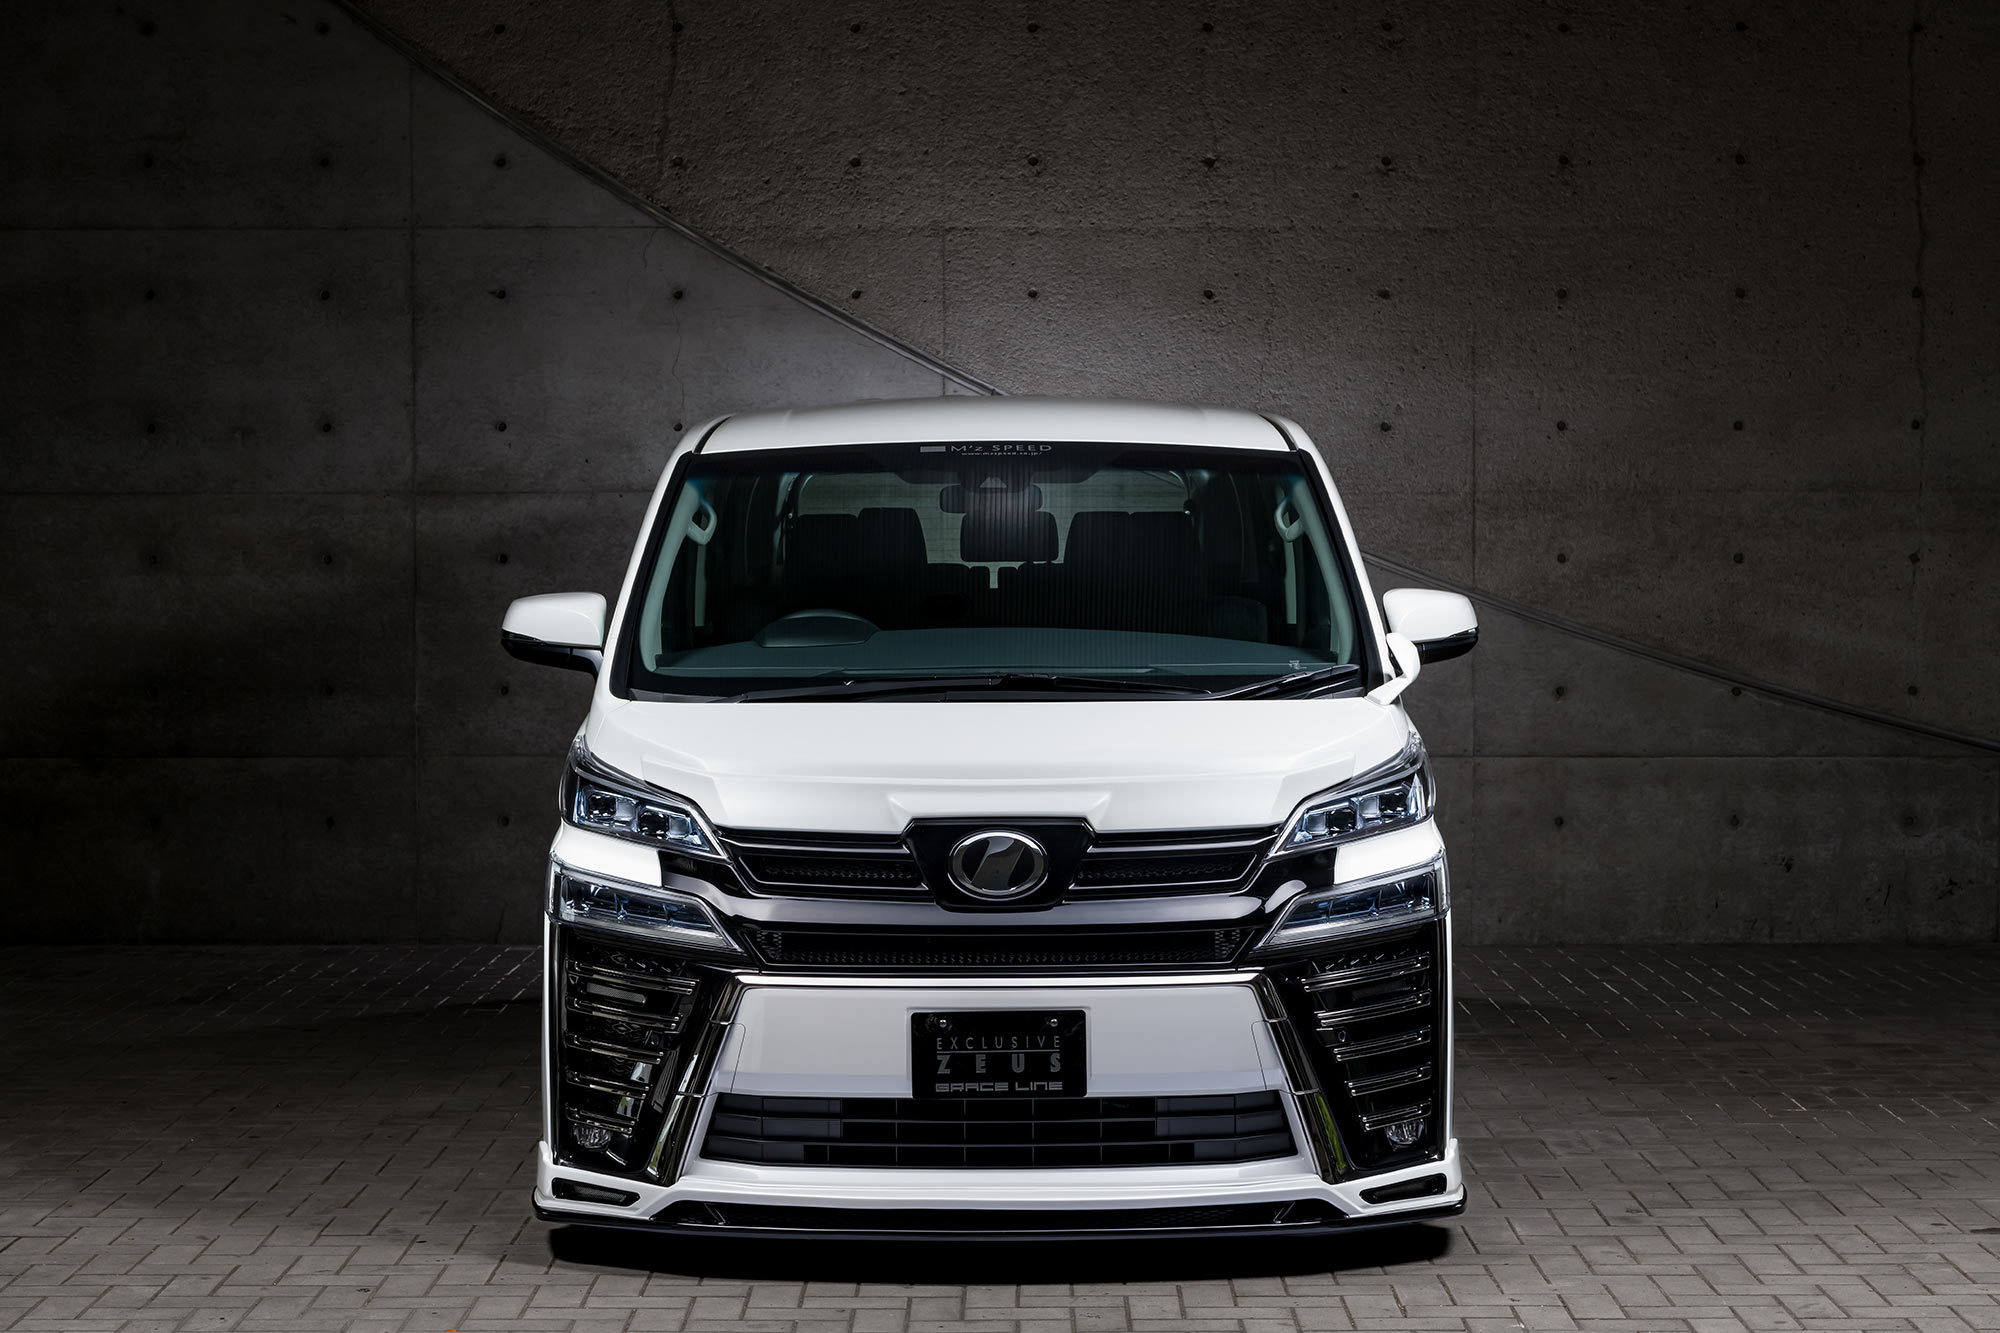 M'z Speed body kit for Toyota Vellfire ZG/Z grade new model